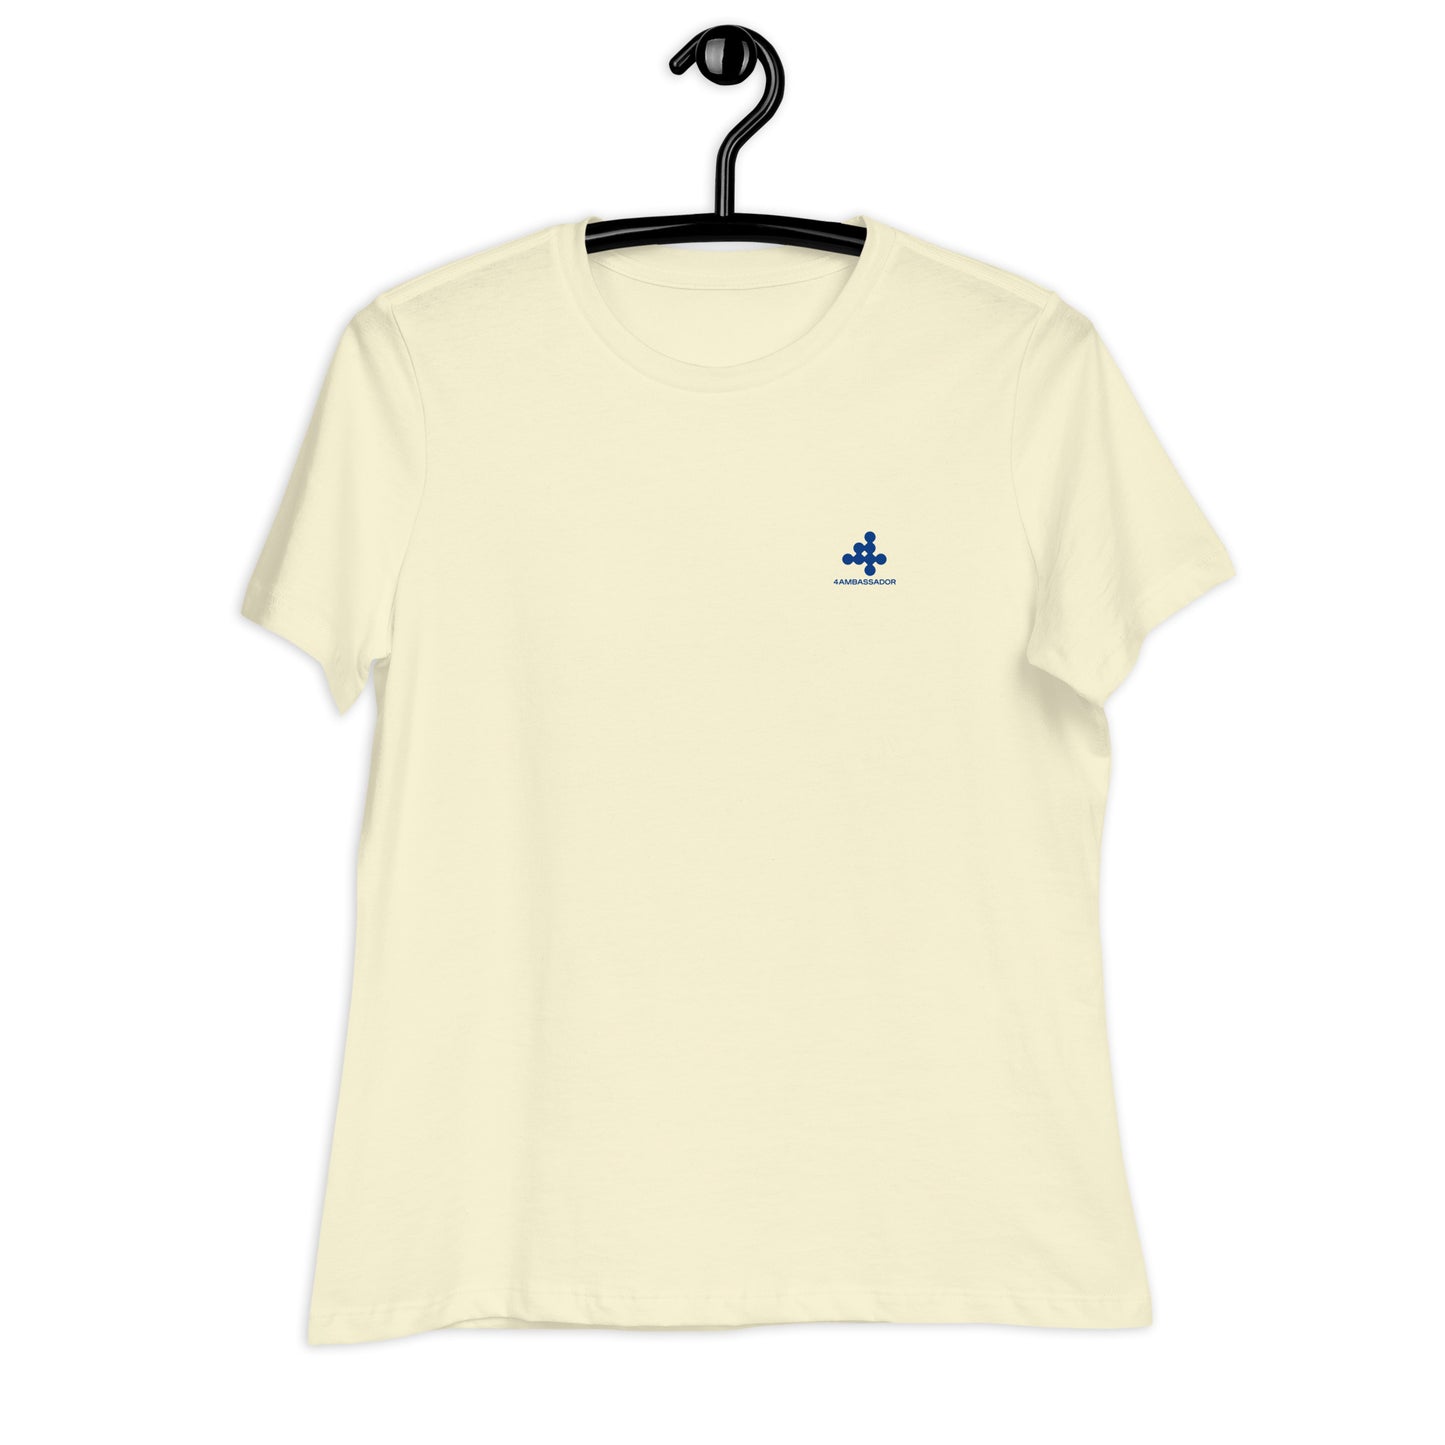 T-shirt Donna: L'eleganza con il Comfort! 💁‍♀️✨